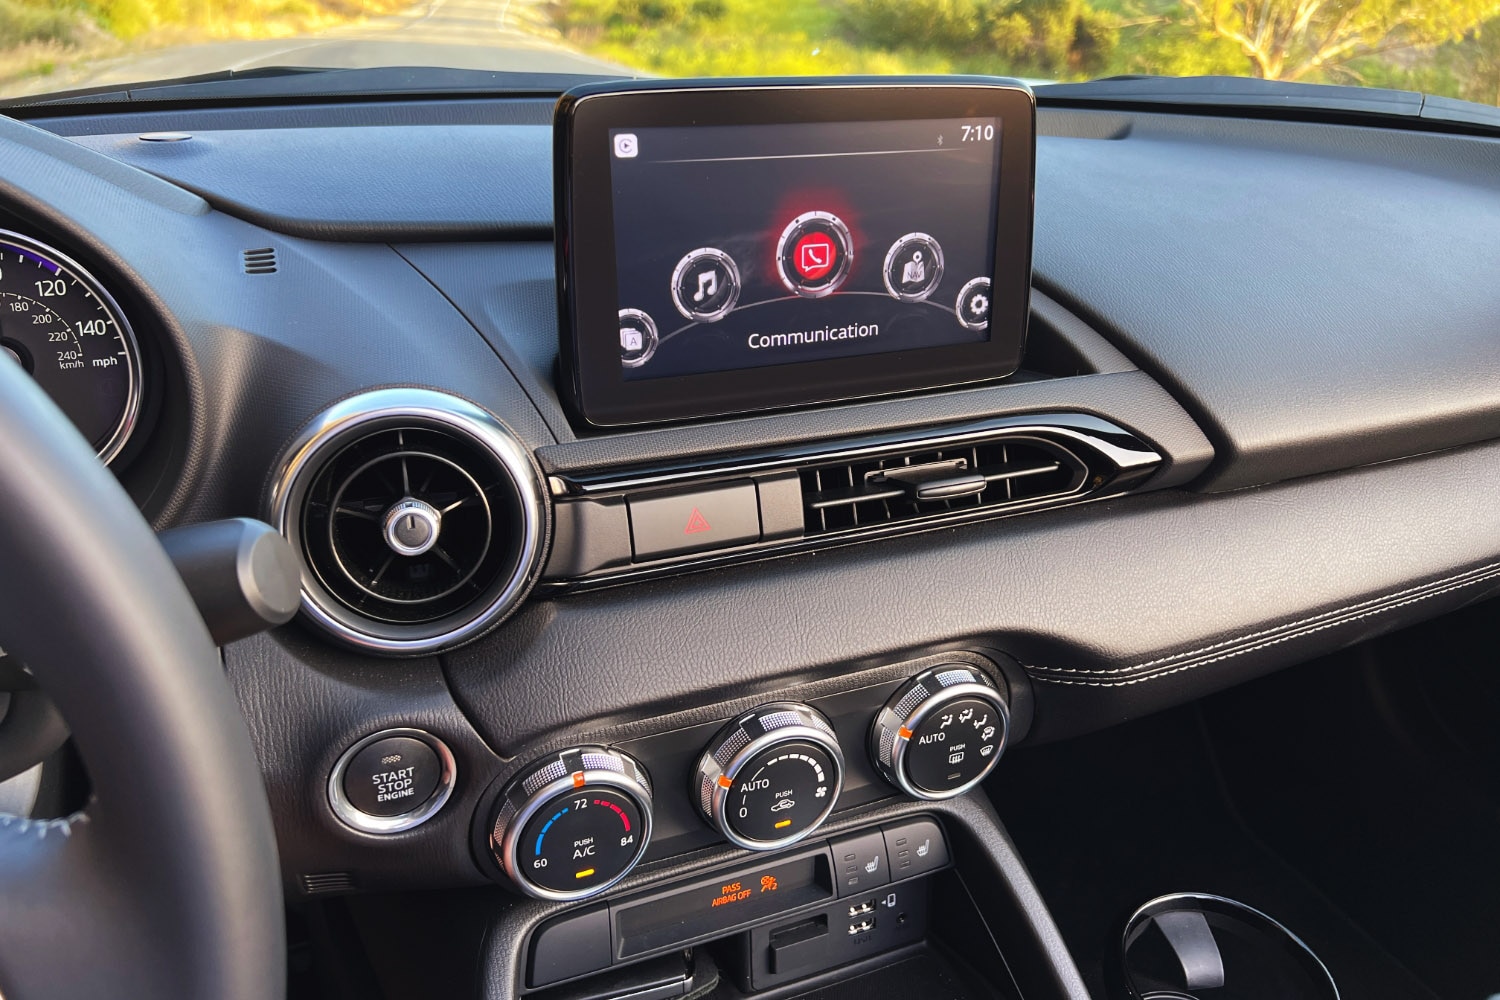 2023 Mazda MX-5 Miata Grand Touring infotainment system